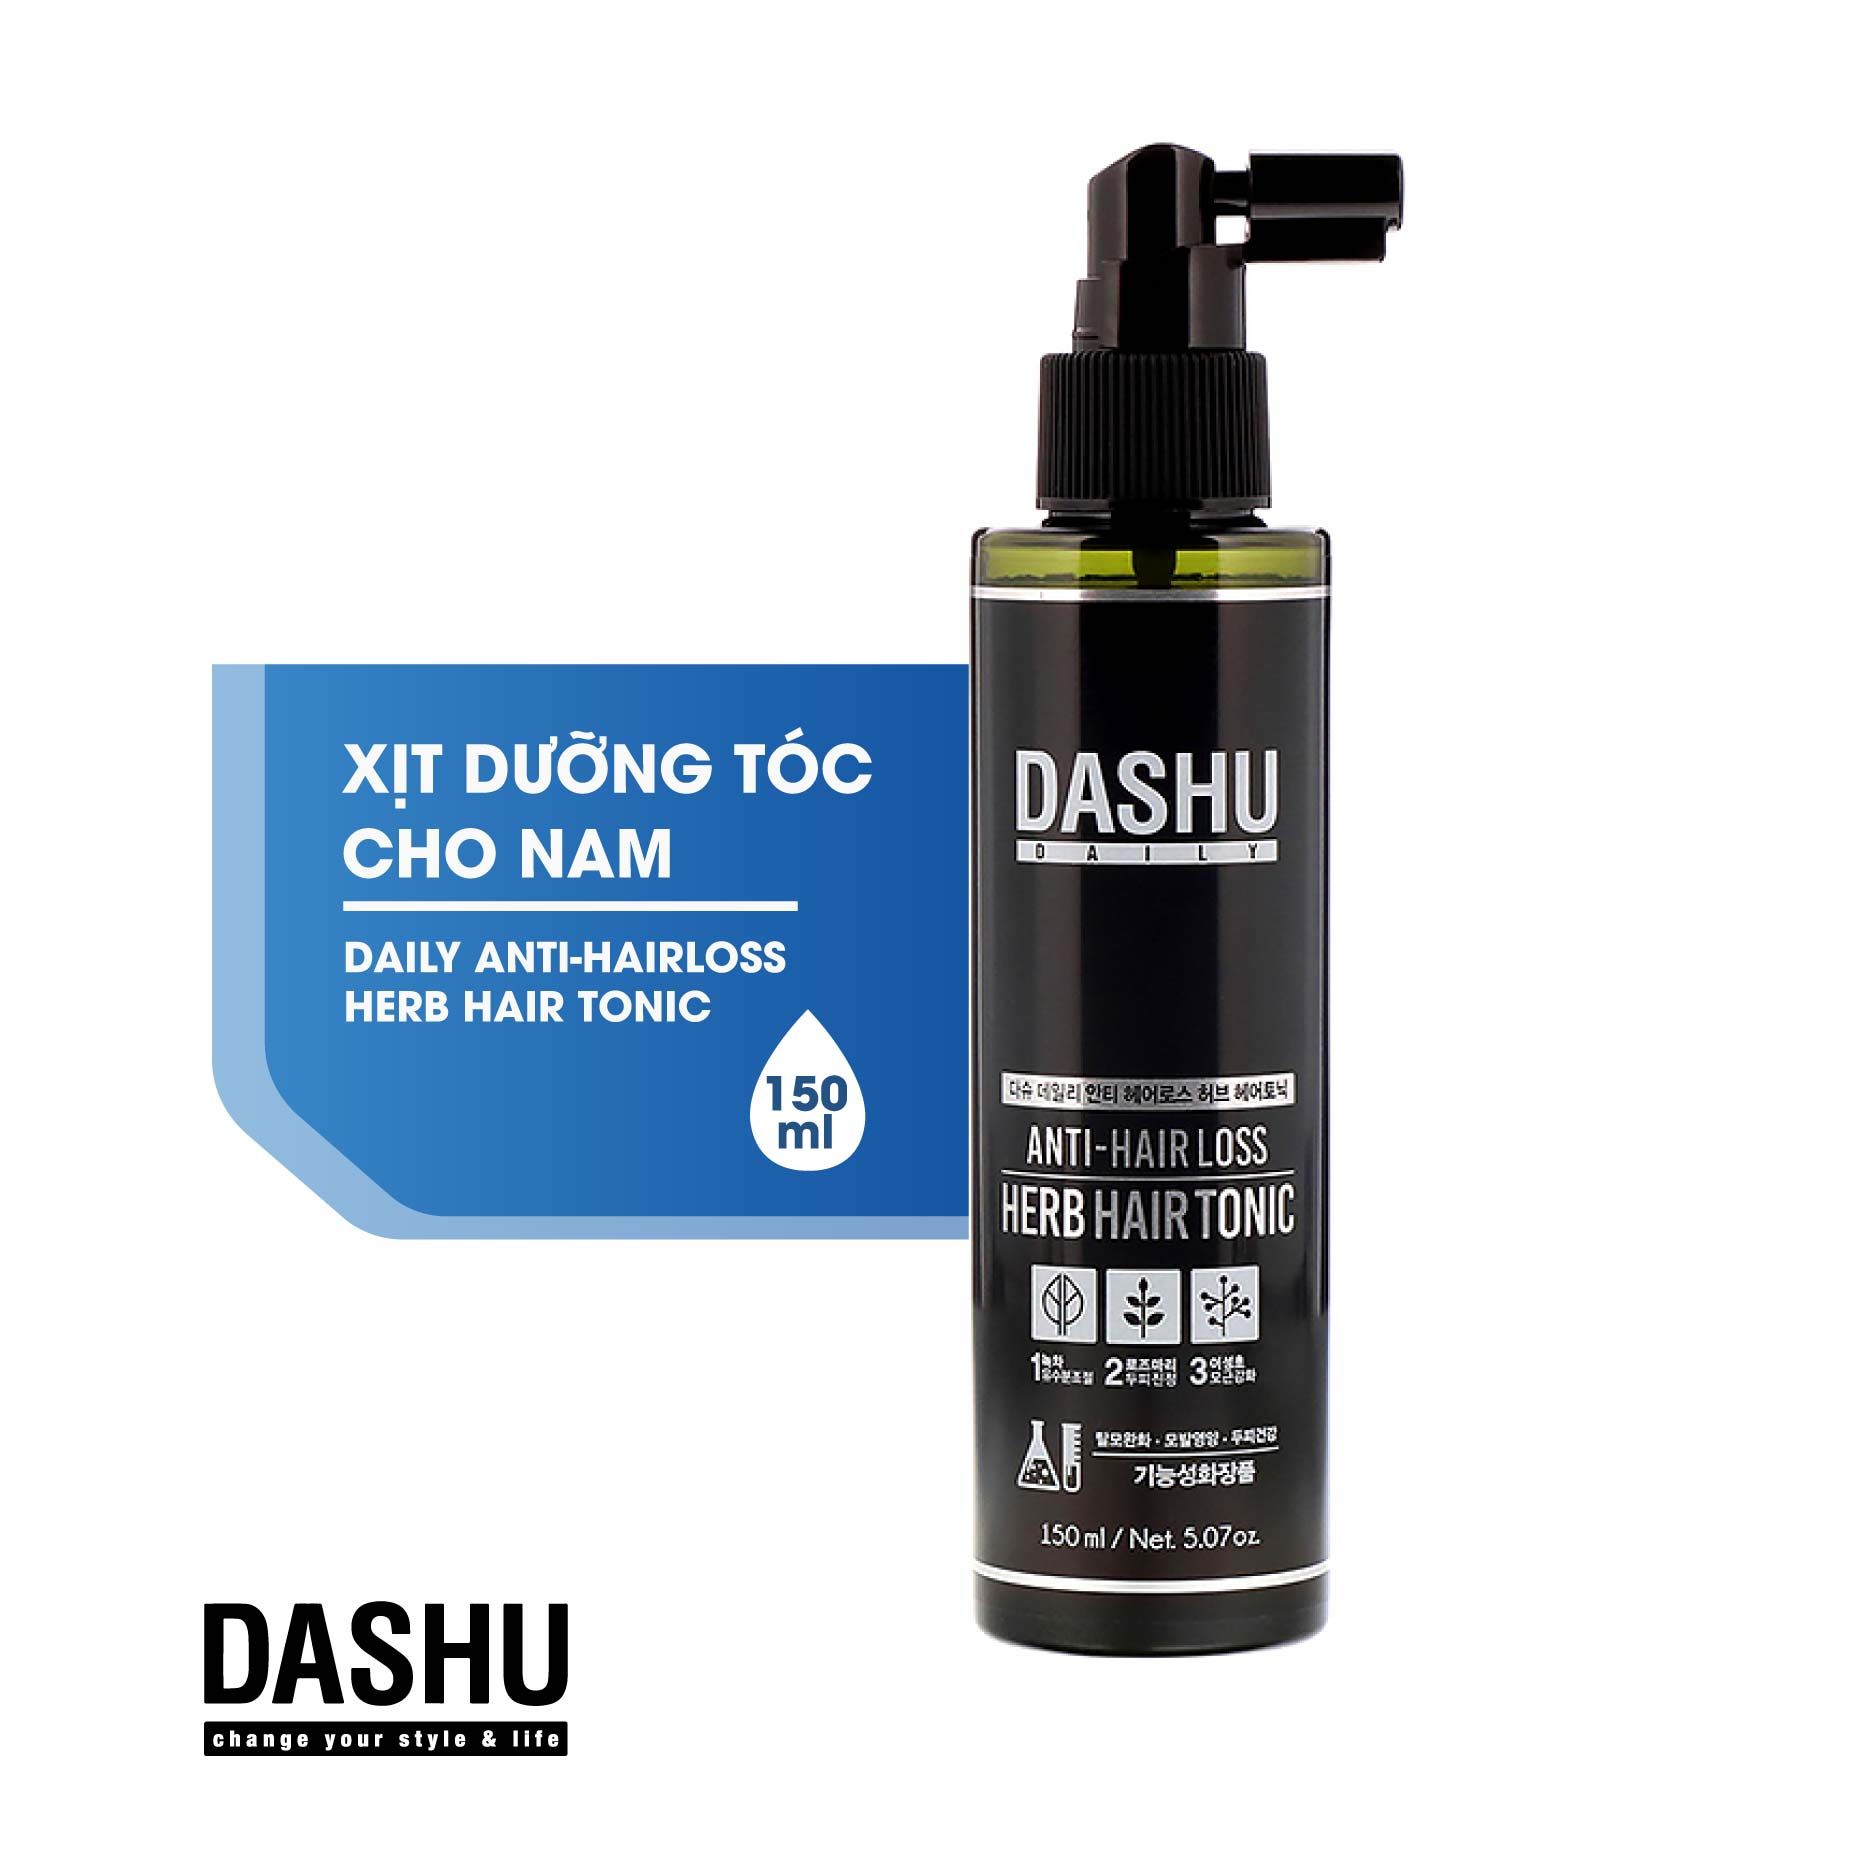 Xịt dưỡng tóc Dashu daily anti-hairloss herb hair tonic